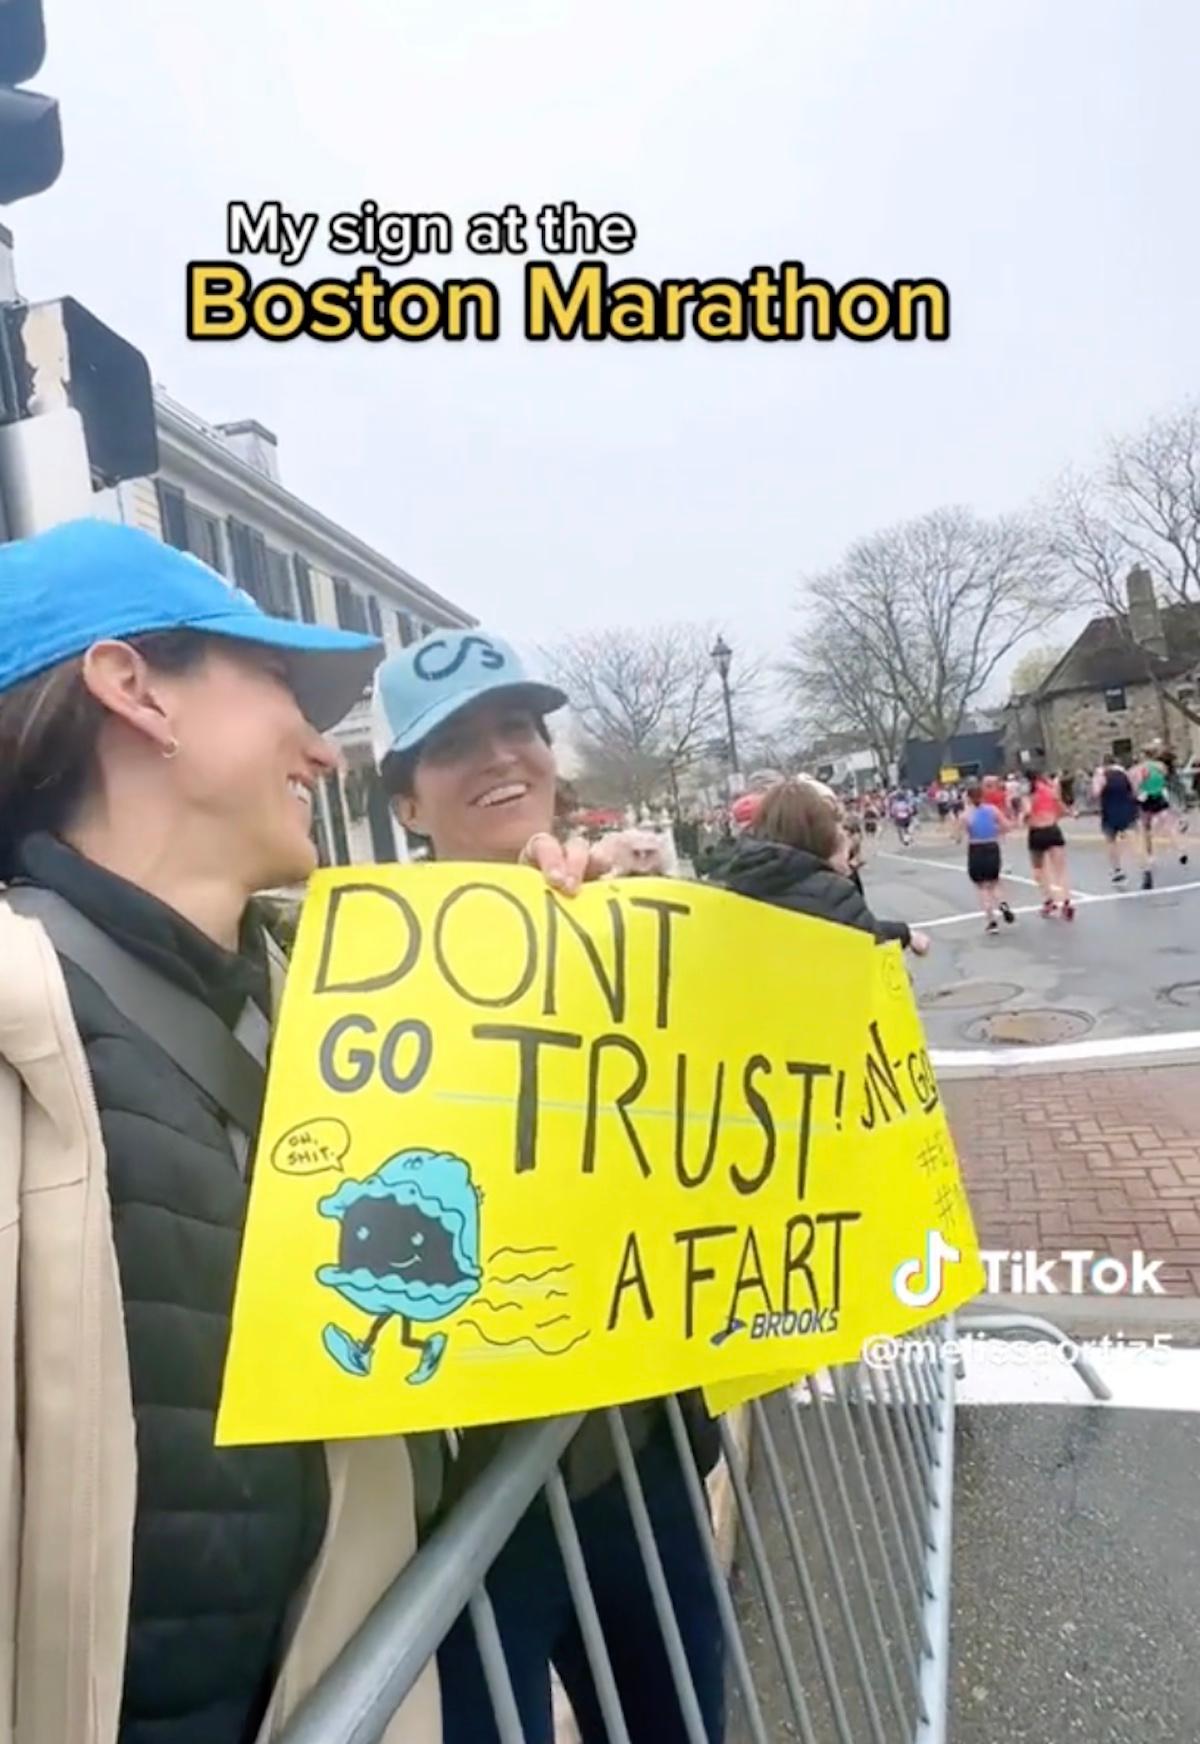 Kvinna som håller en skylt som säger "Lita inte på en fis" på ett maraton